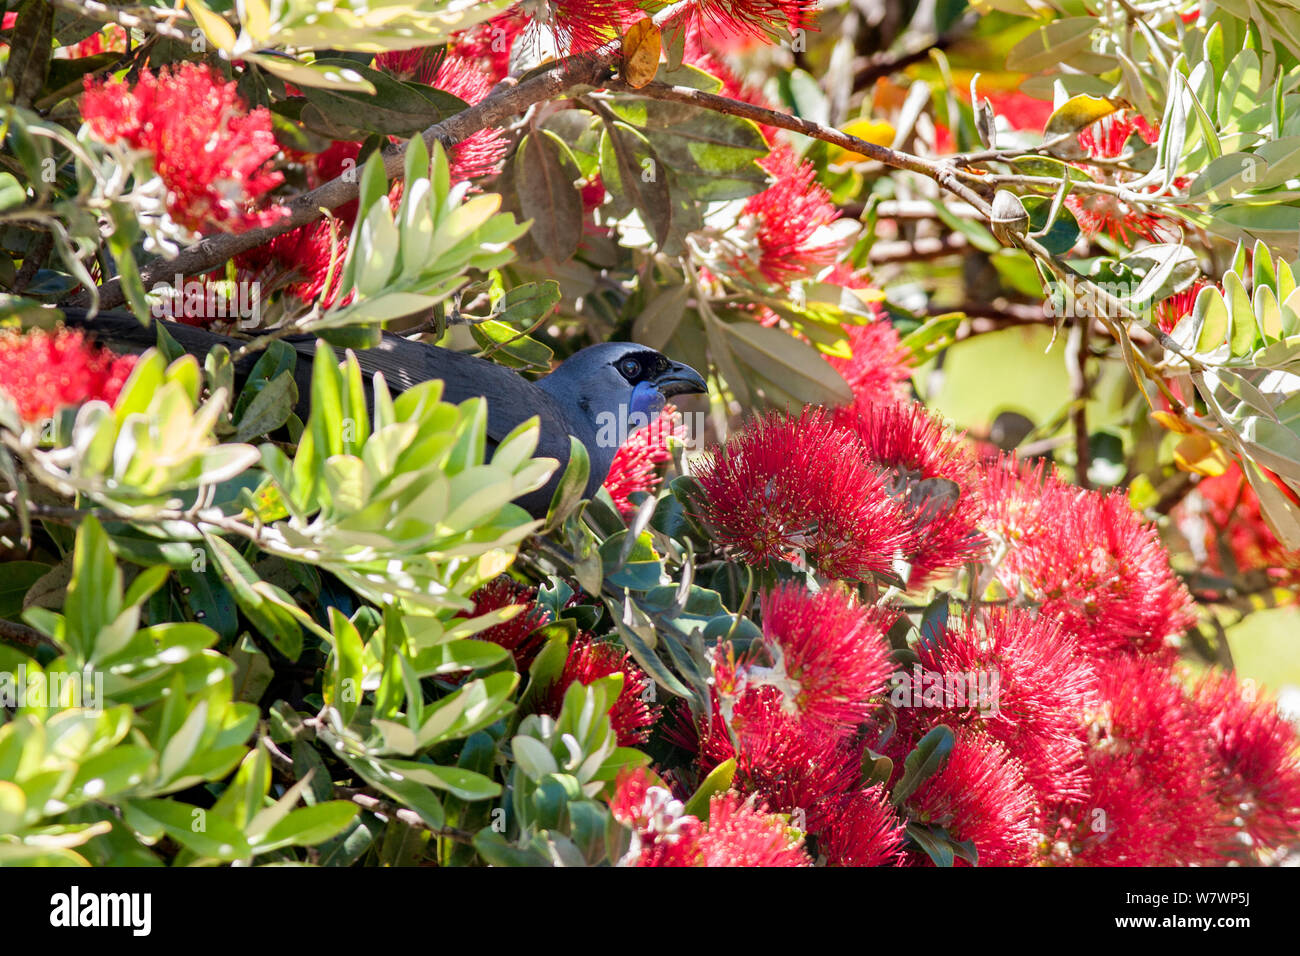 Per adulti (kokako Callaeas wilsoni) arroccato in una fioritura Pohutukawa tree (Metrosideros excelsa) ed alimentando il nettare. Tiritiri Matangi Island, Auckland, Nuova Zelanda, Dicembre. Specie in via di estinzione. Foto Stock